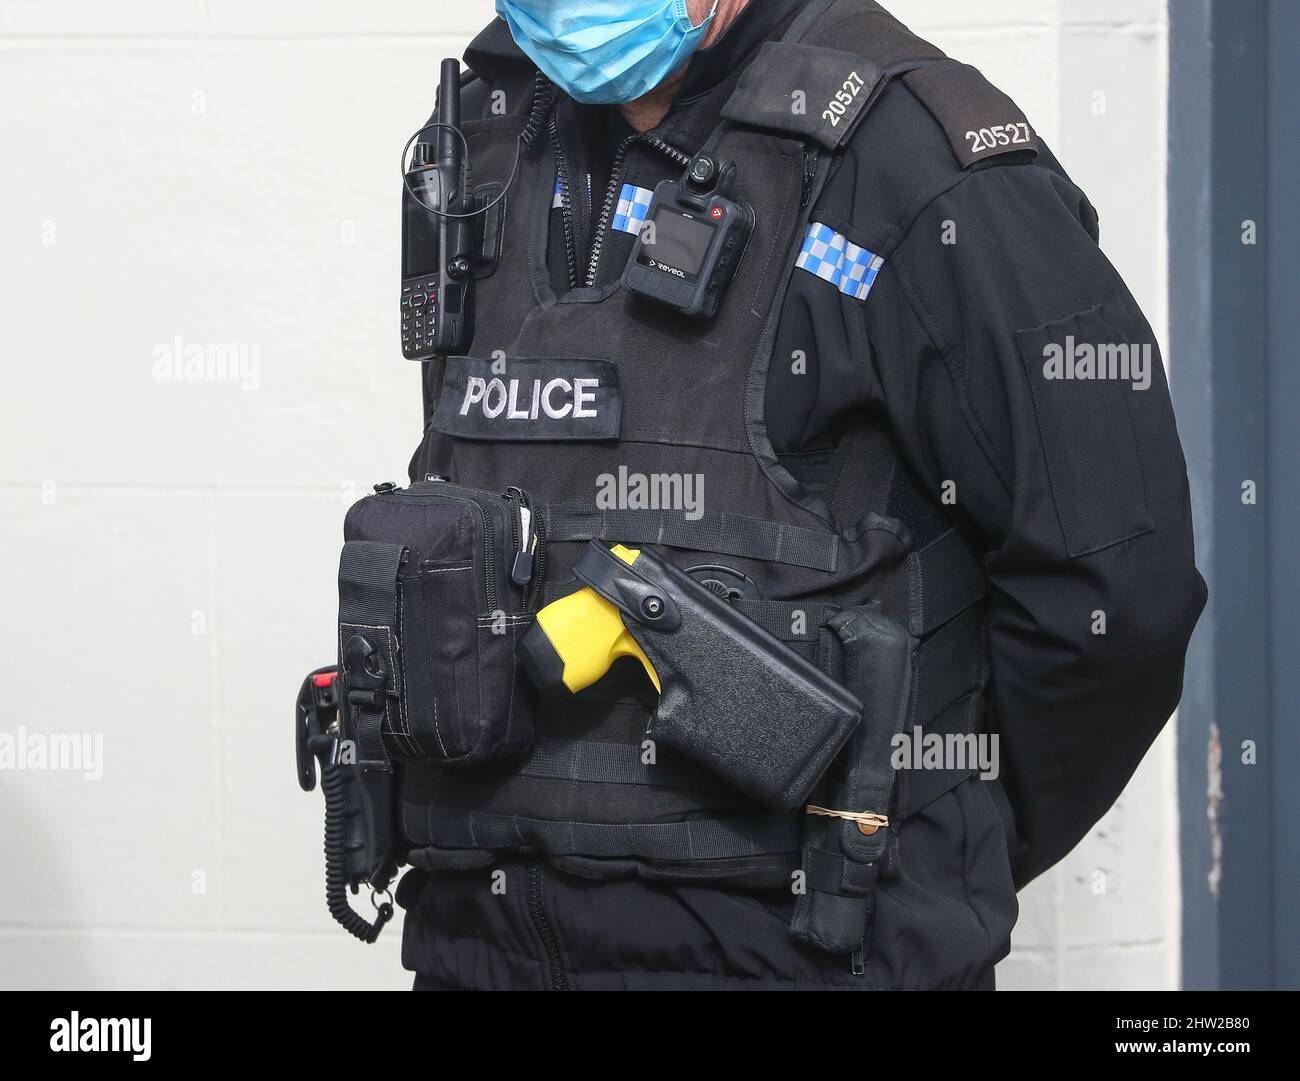 Oficial de policía del Reino Unido con chaleco táctico que incluye una pistola de azafar y una cámara para el cuerpo. Foto de stock